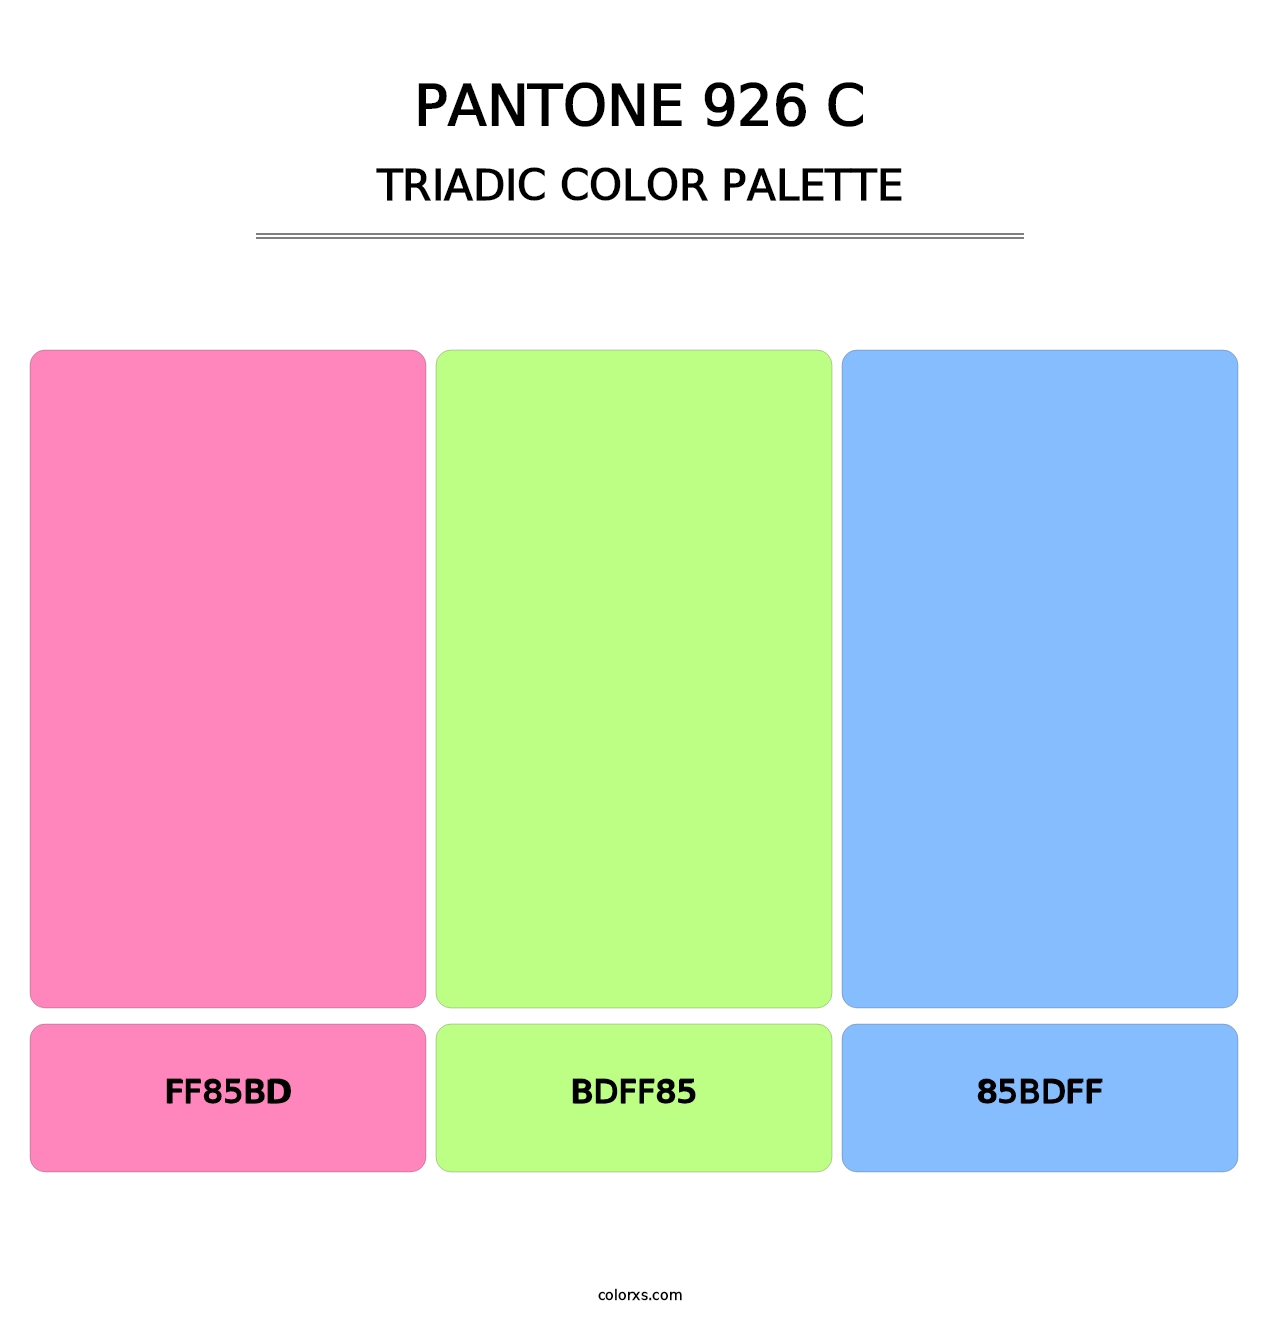 PANTONE 926 C - Triadic Color Palette